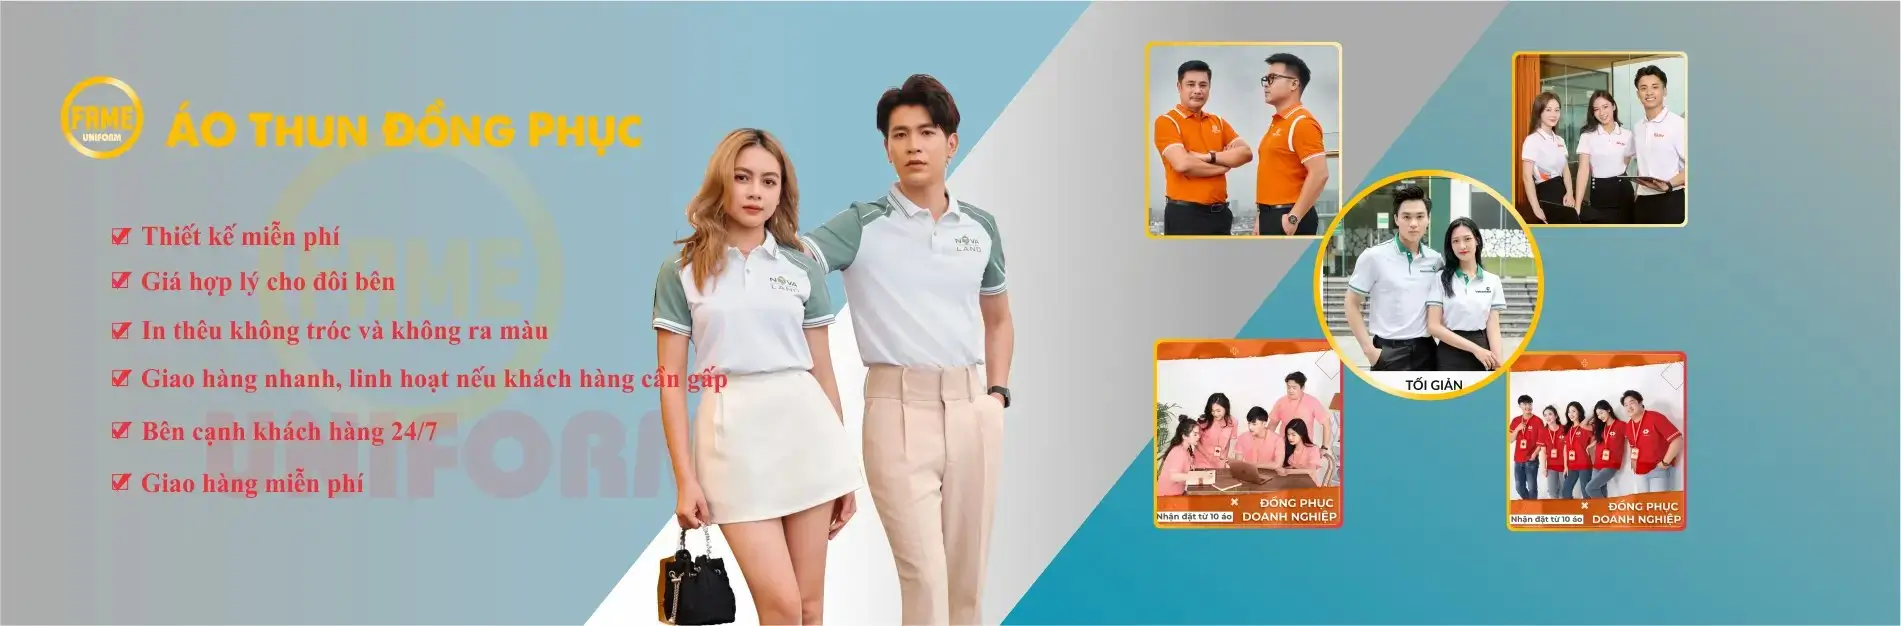 Công ty may đồng phục gái rẻ tại Đà Nẵng uy tín chất lượng